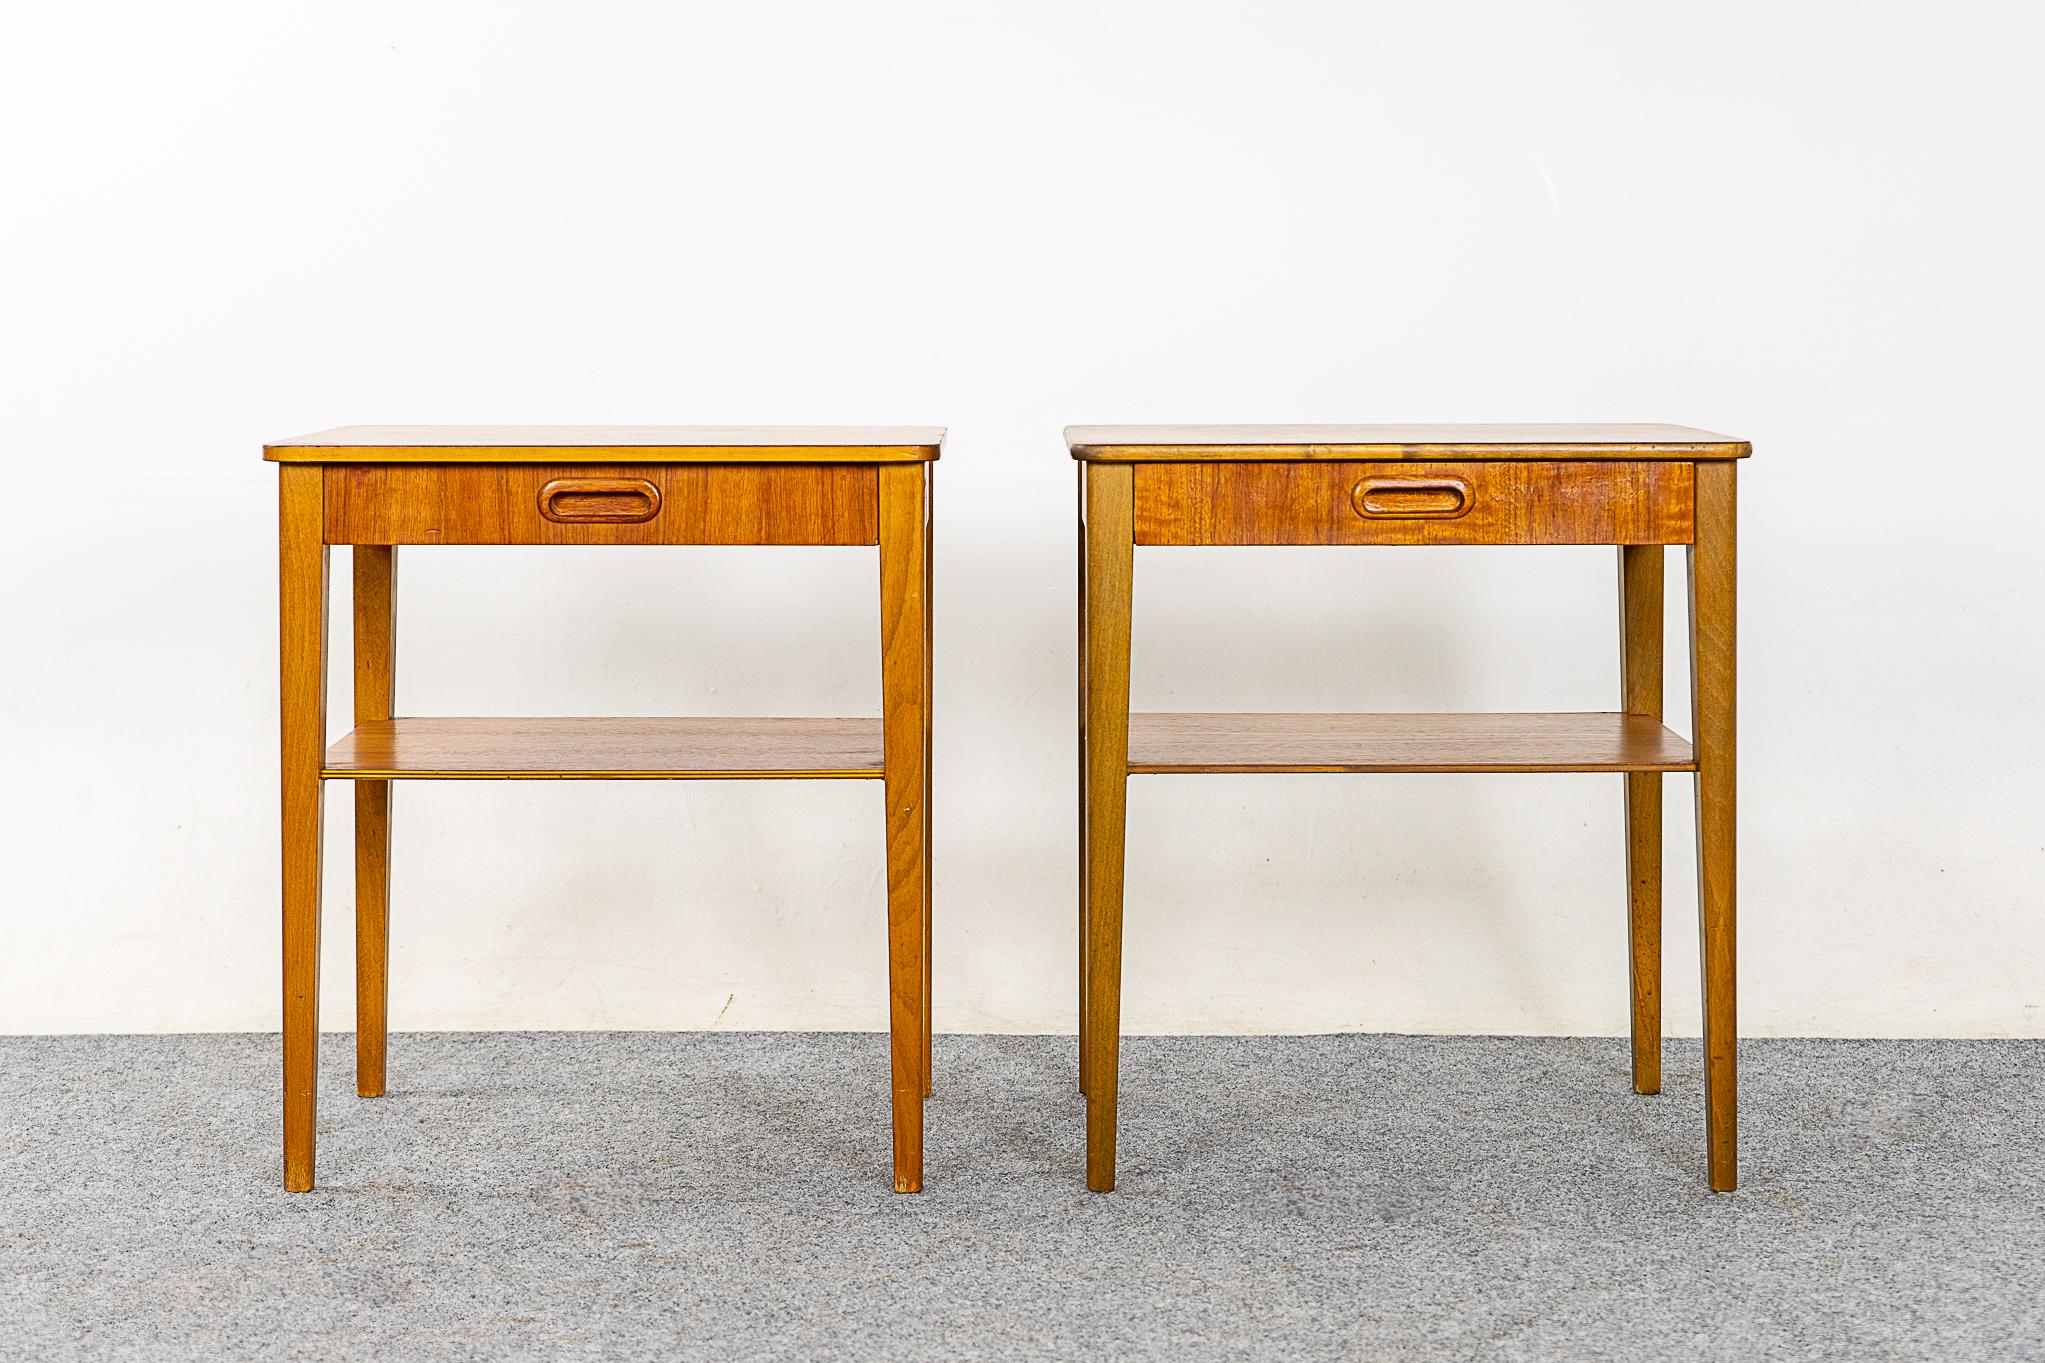 Nachttischpaar aus Teak- und Buchenholz, ca. 1960er Jahre. Das schön furnierte Gehäuse ruht auf schlanken, konisch zulaufenden Beinen. Die mit Schwalbenschwänzen versehene Schublade bietet Stauraum für kleine Gegenstände, und die untere Ablage ist